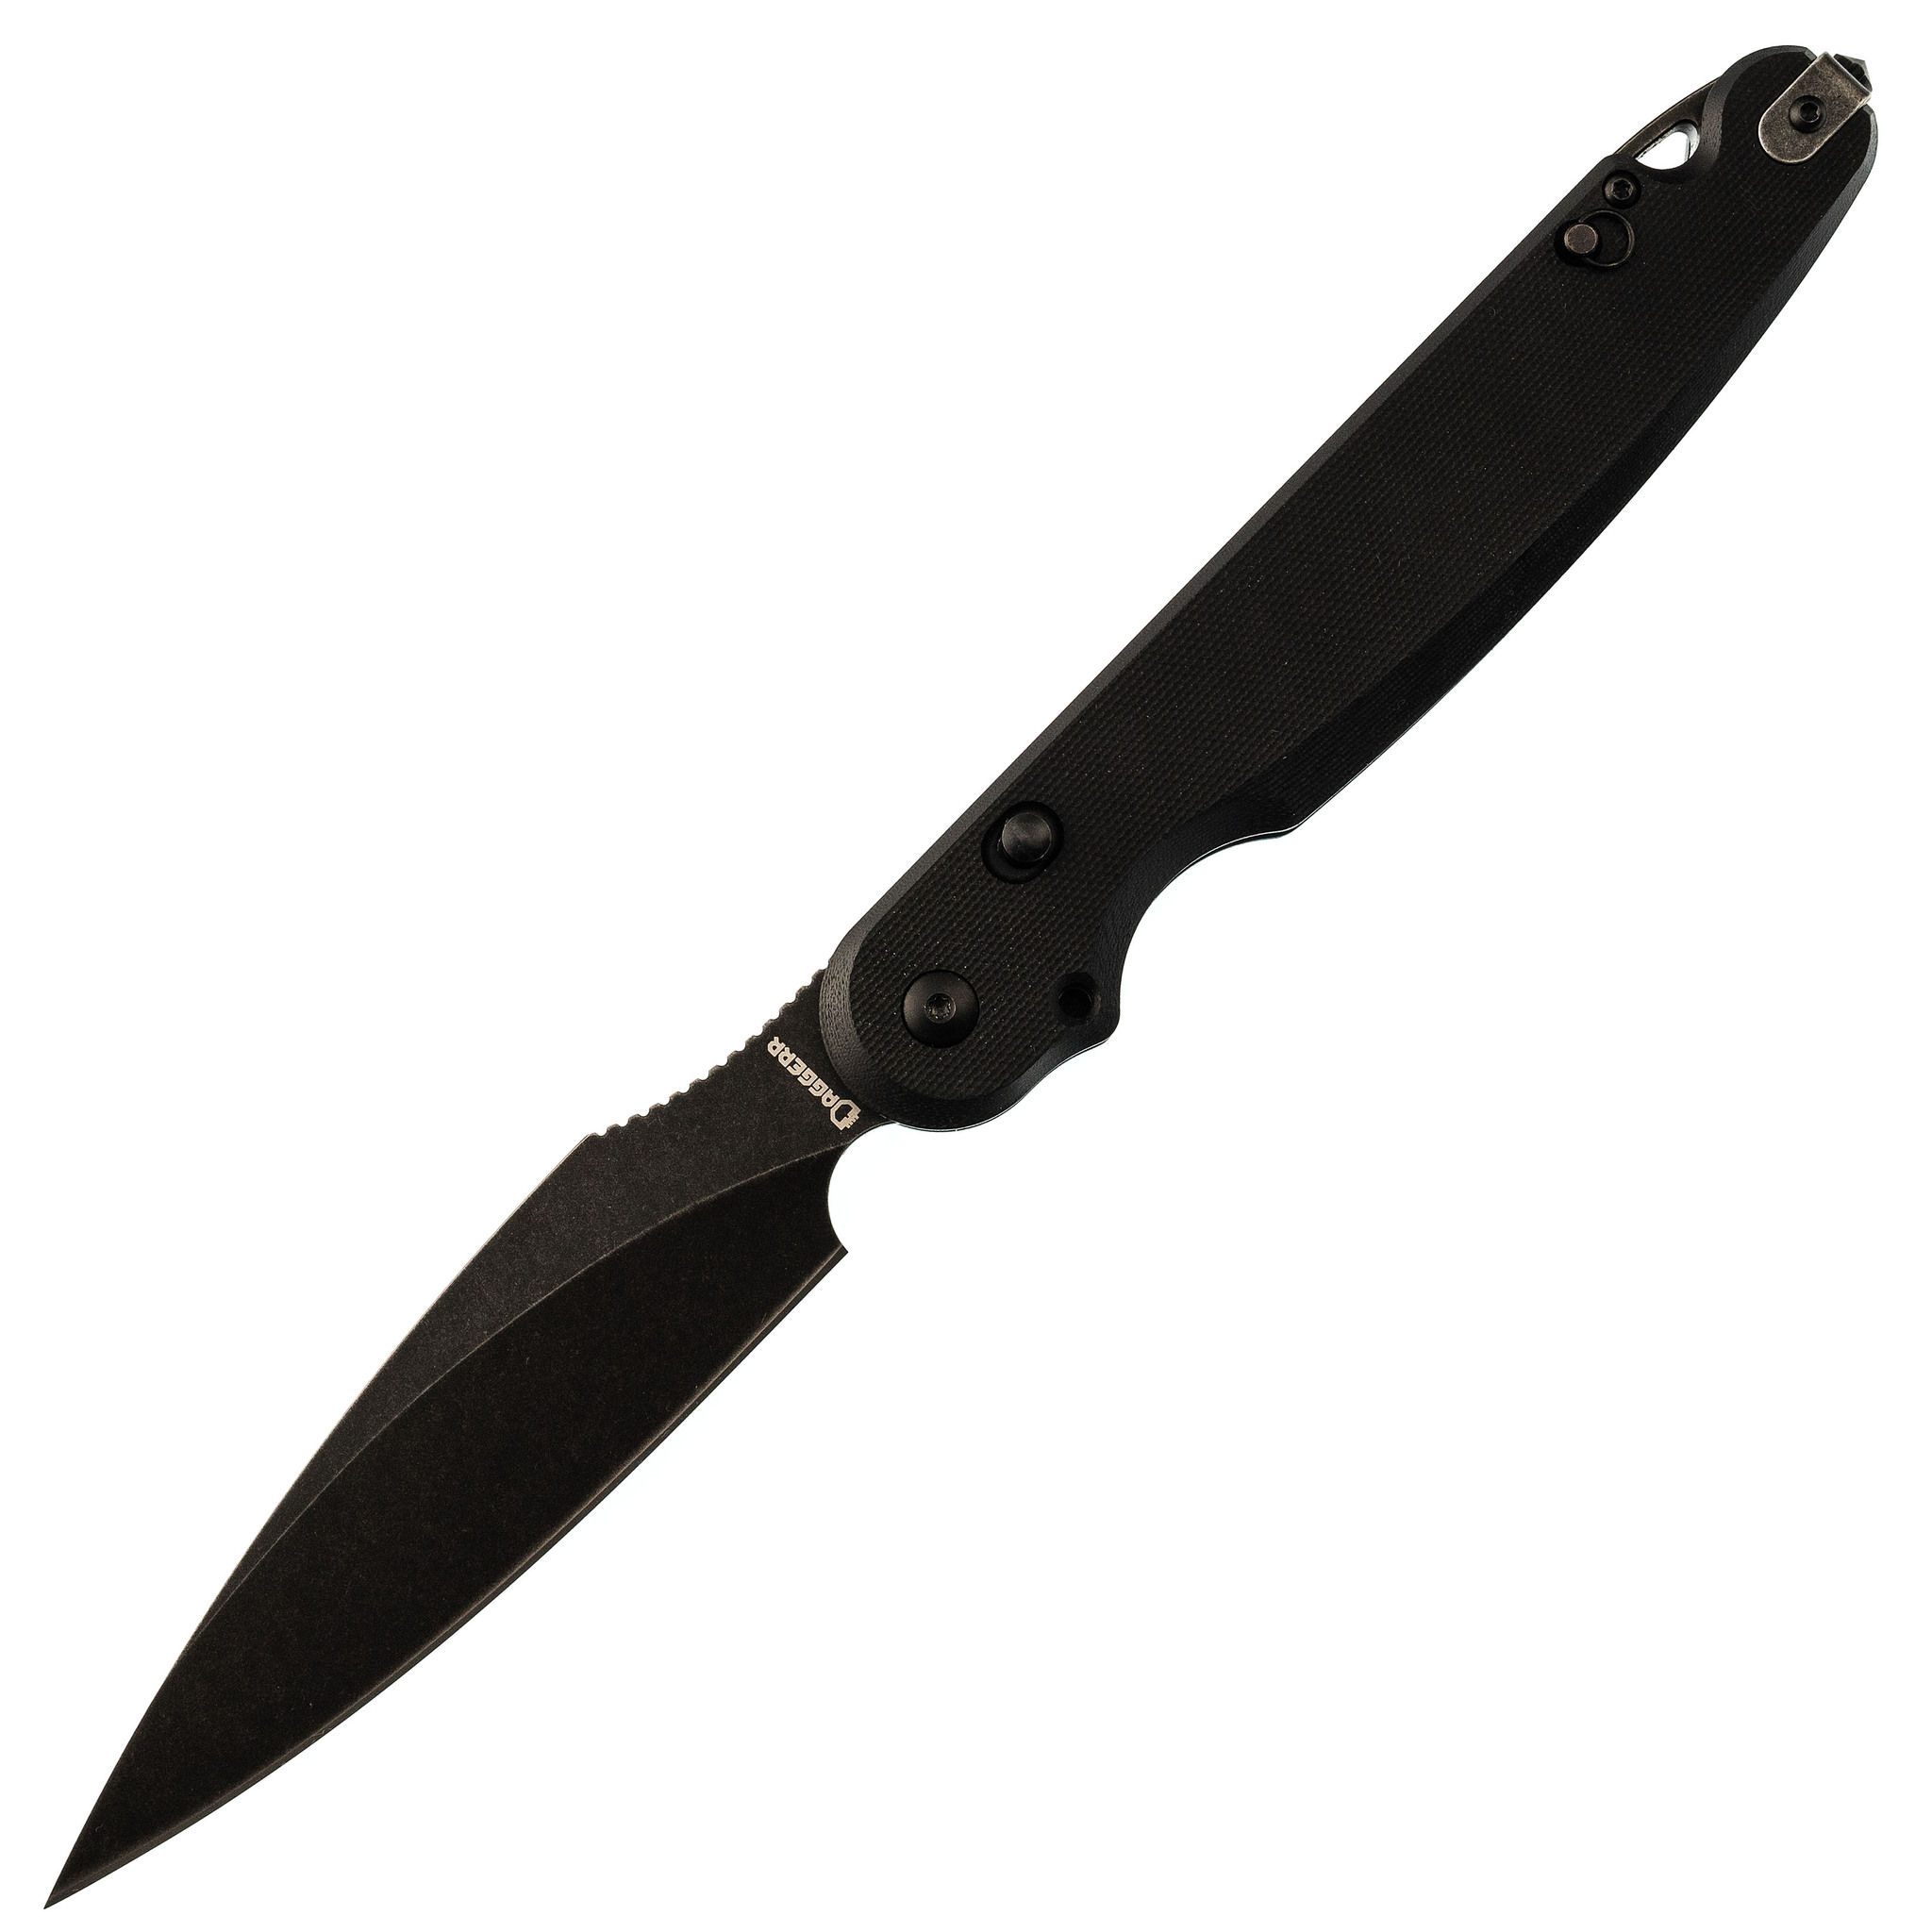 Складной нож  Dagger Parrot 3.0  All Black, G10 складной нож dagger parrot all black сталь vg10 рукоять g10